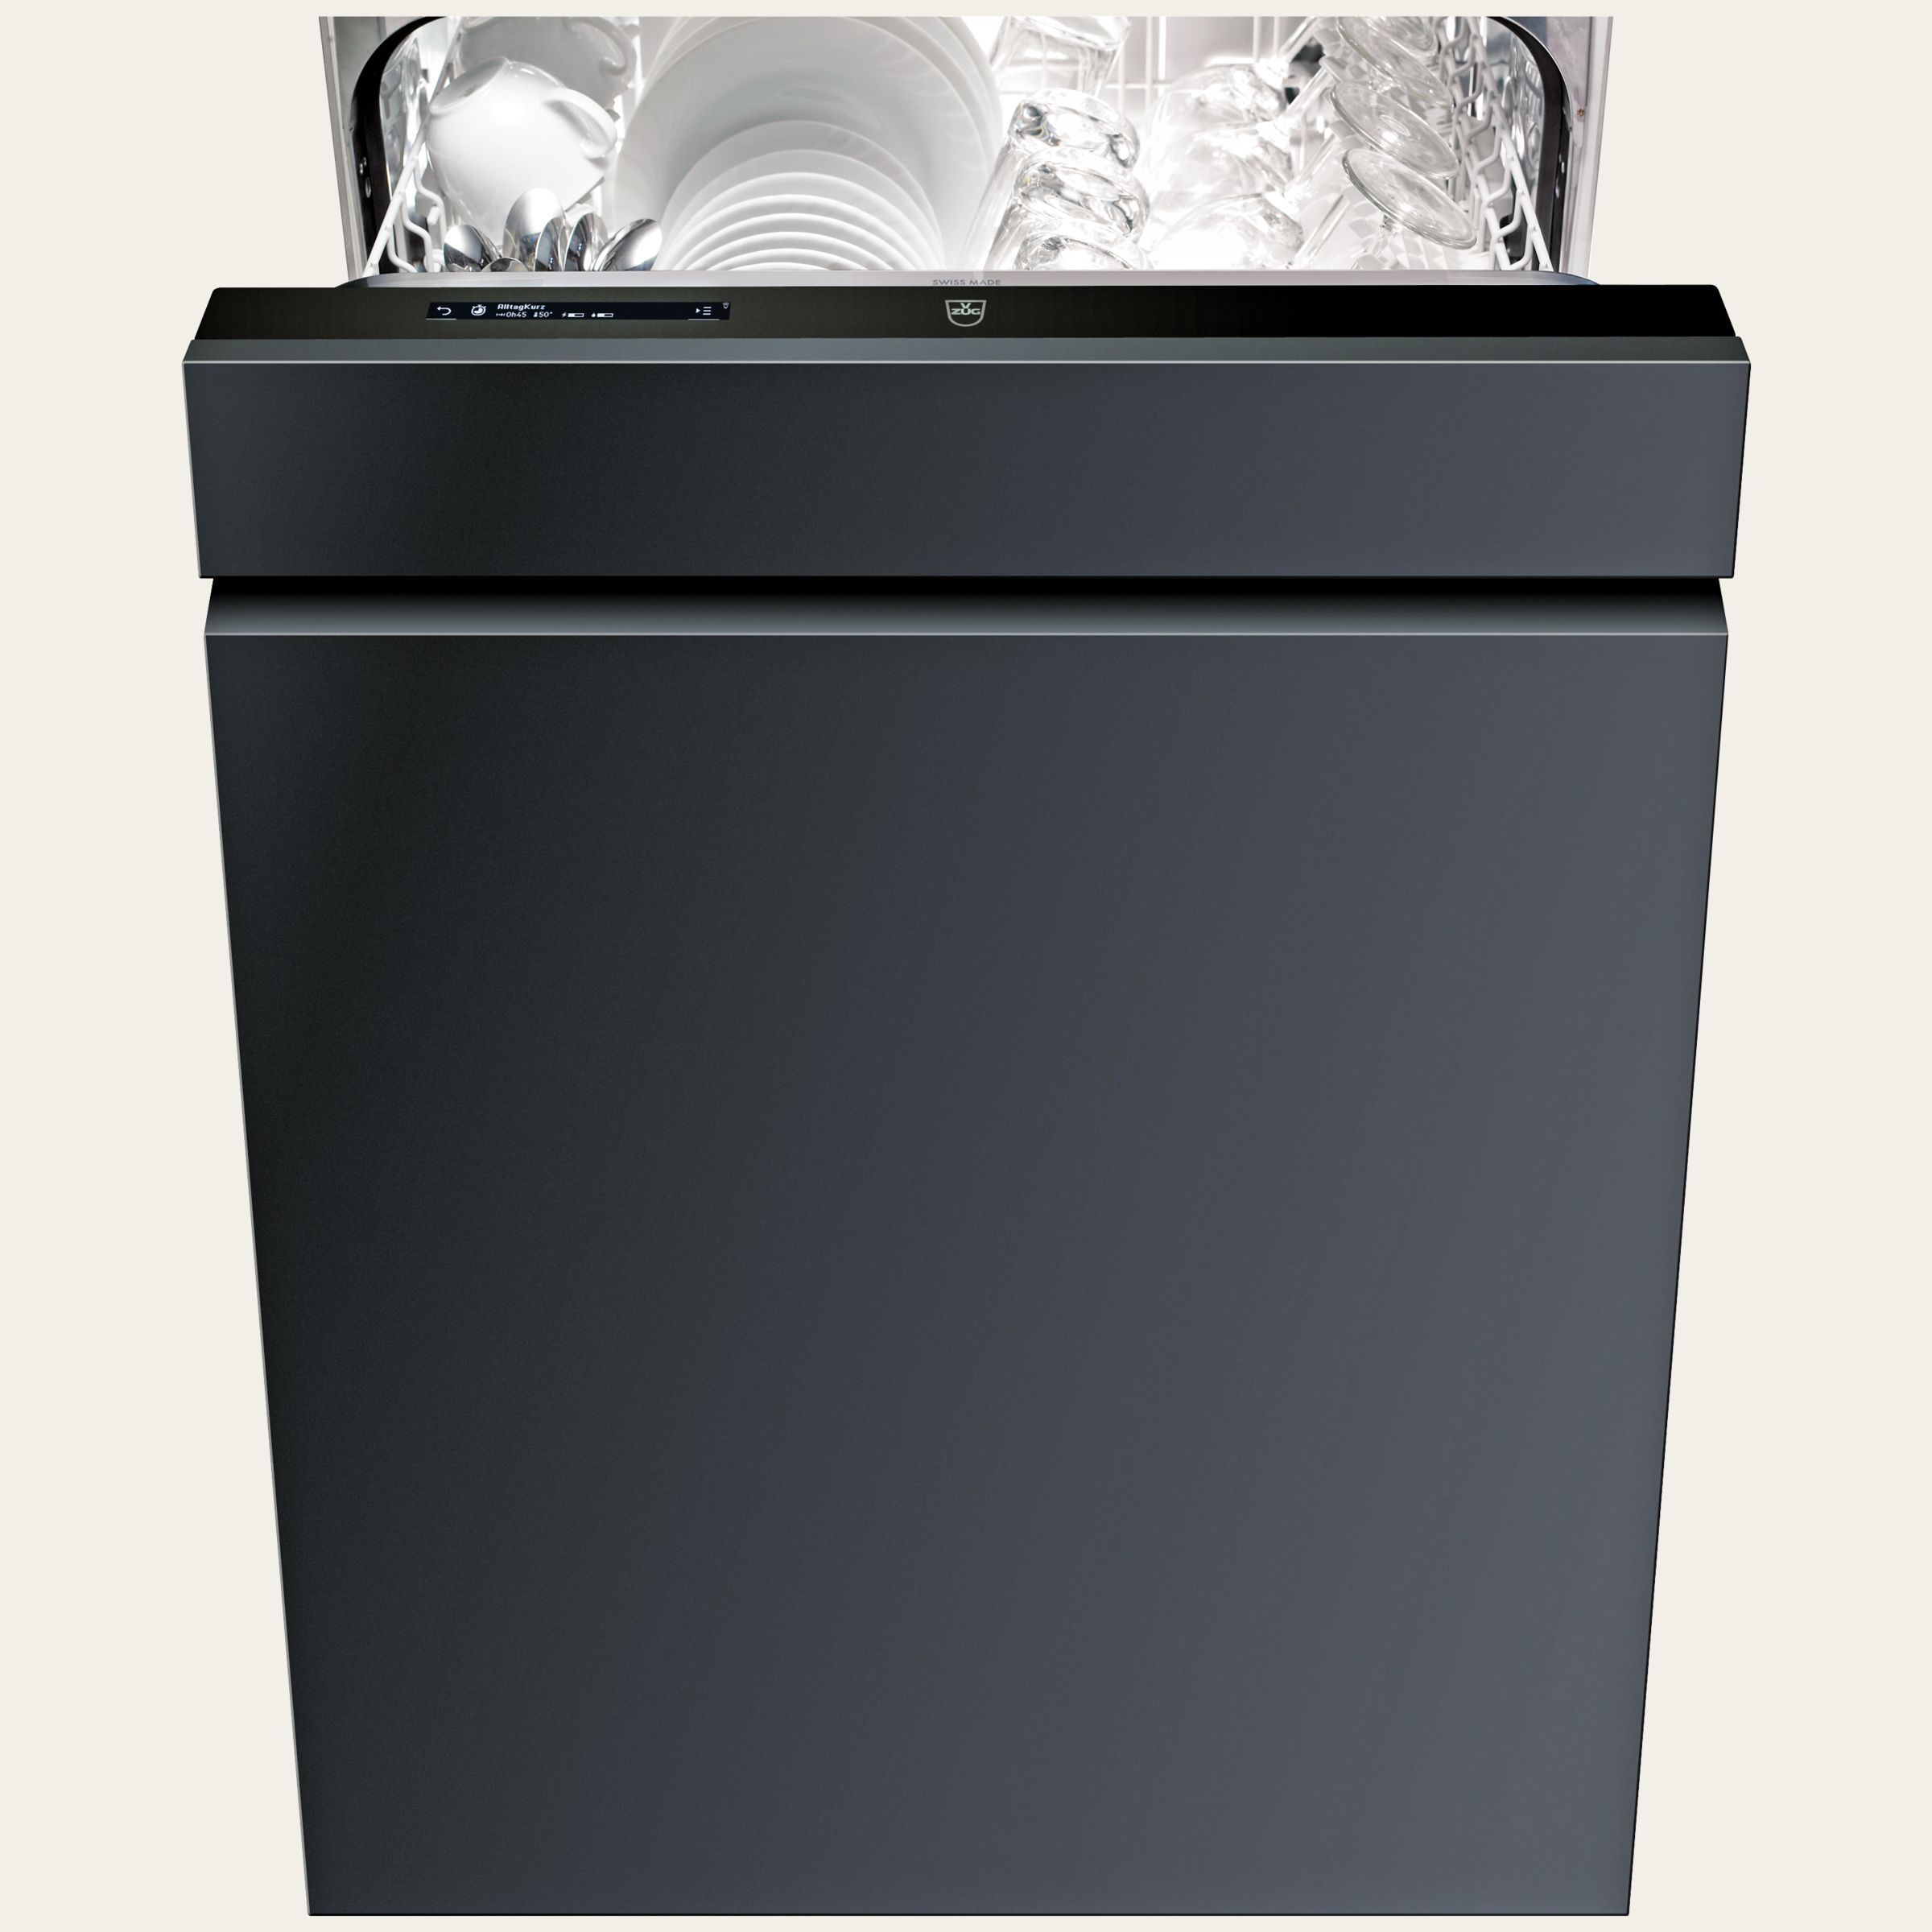 V-ZUG Lave-vaisselle AdoraVaisselle V6000, Norme largeur: 60 cm, Entièrement intégrable, V-ZUG-Home, Pompe à chaleur, Ecran LCD